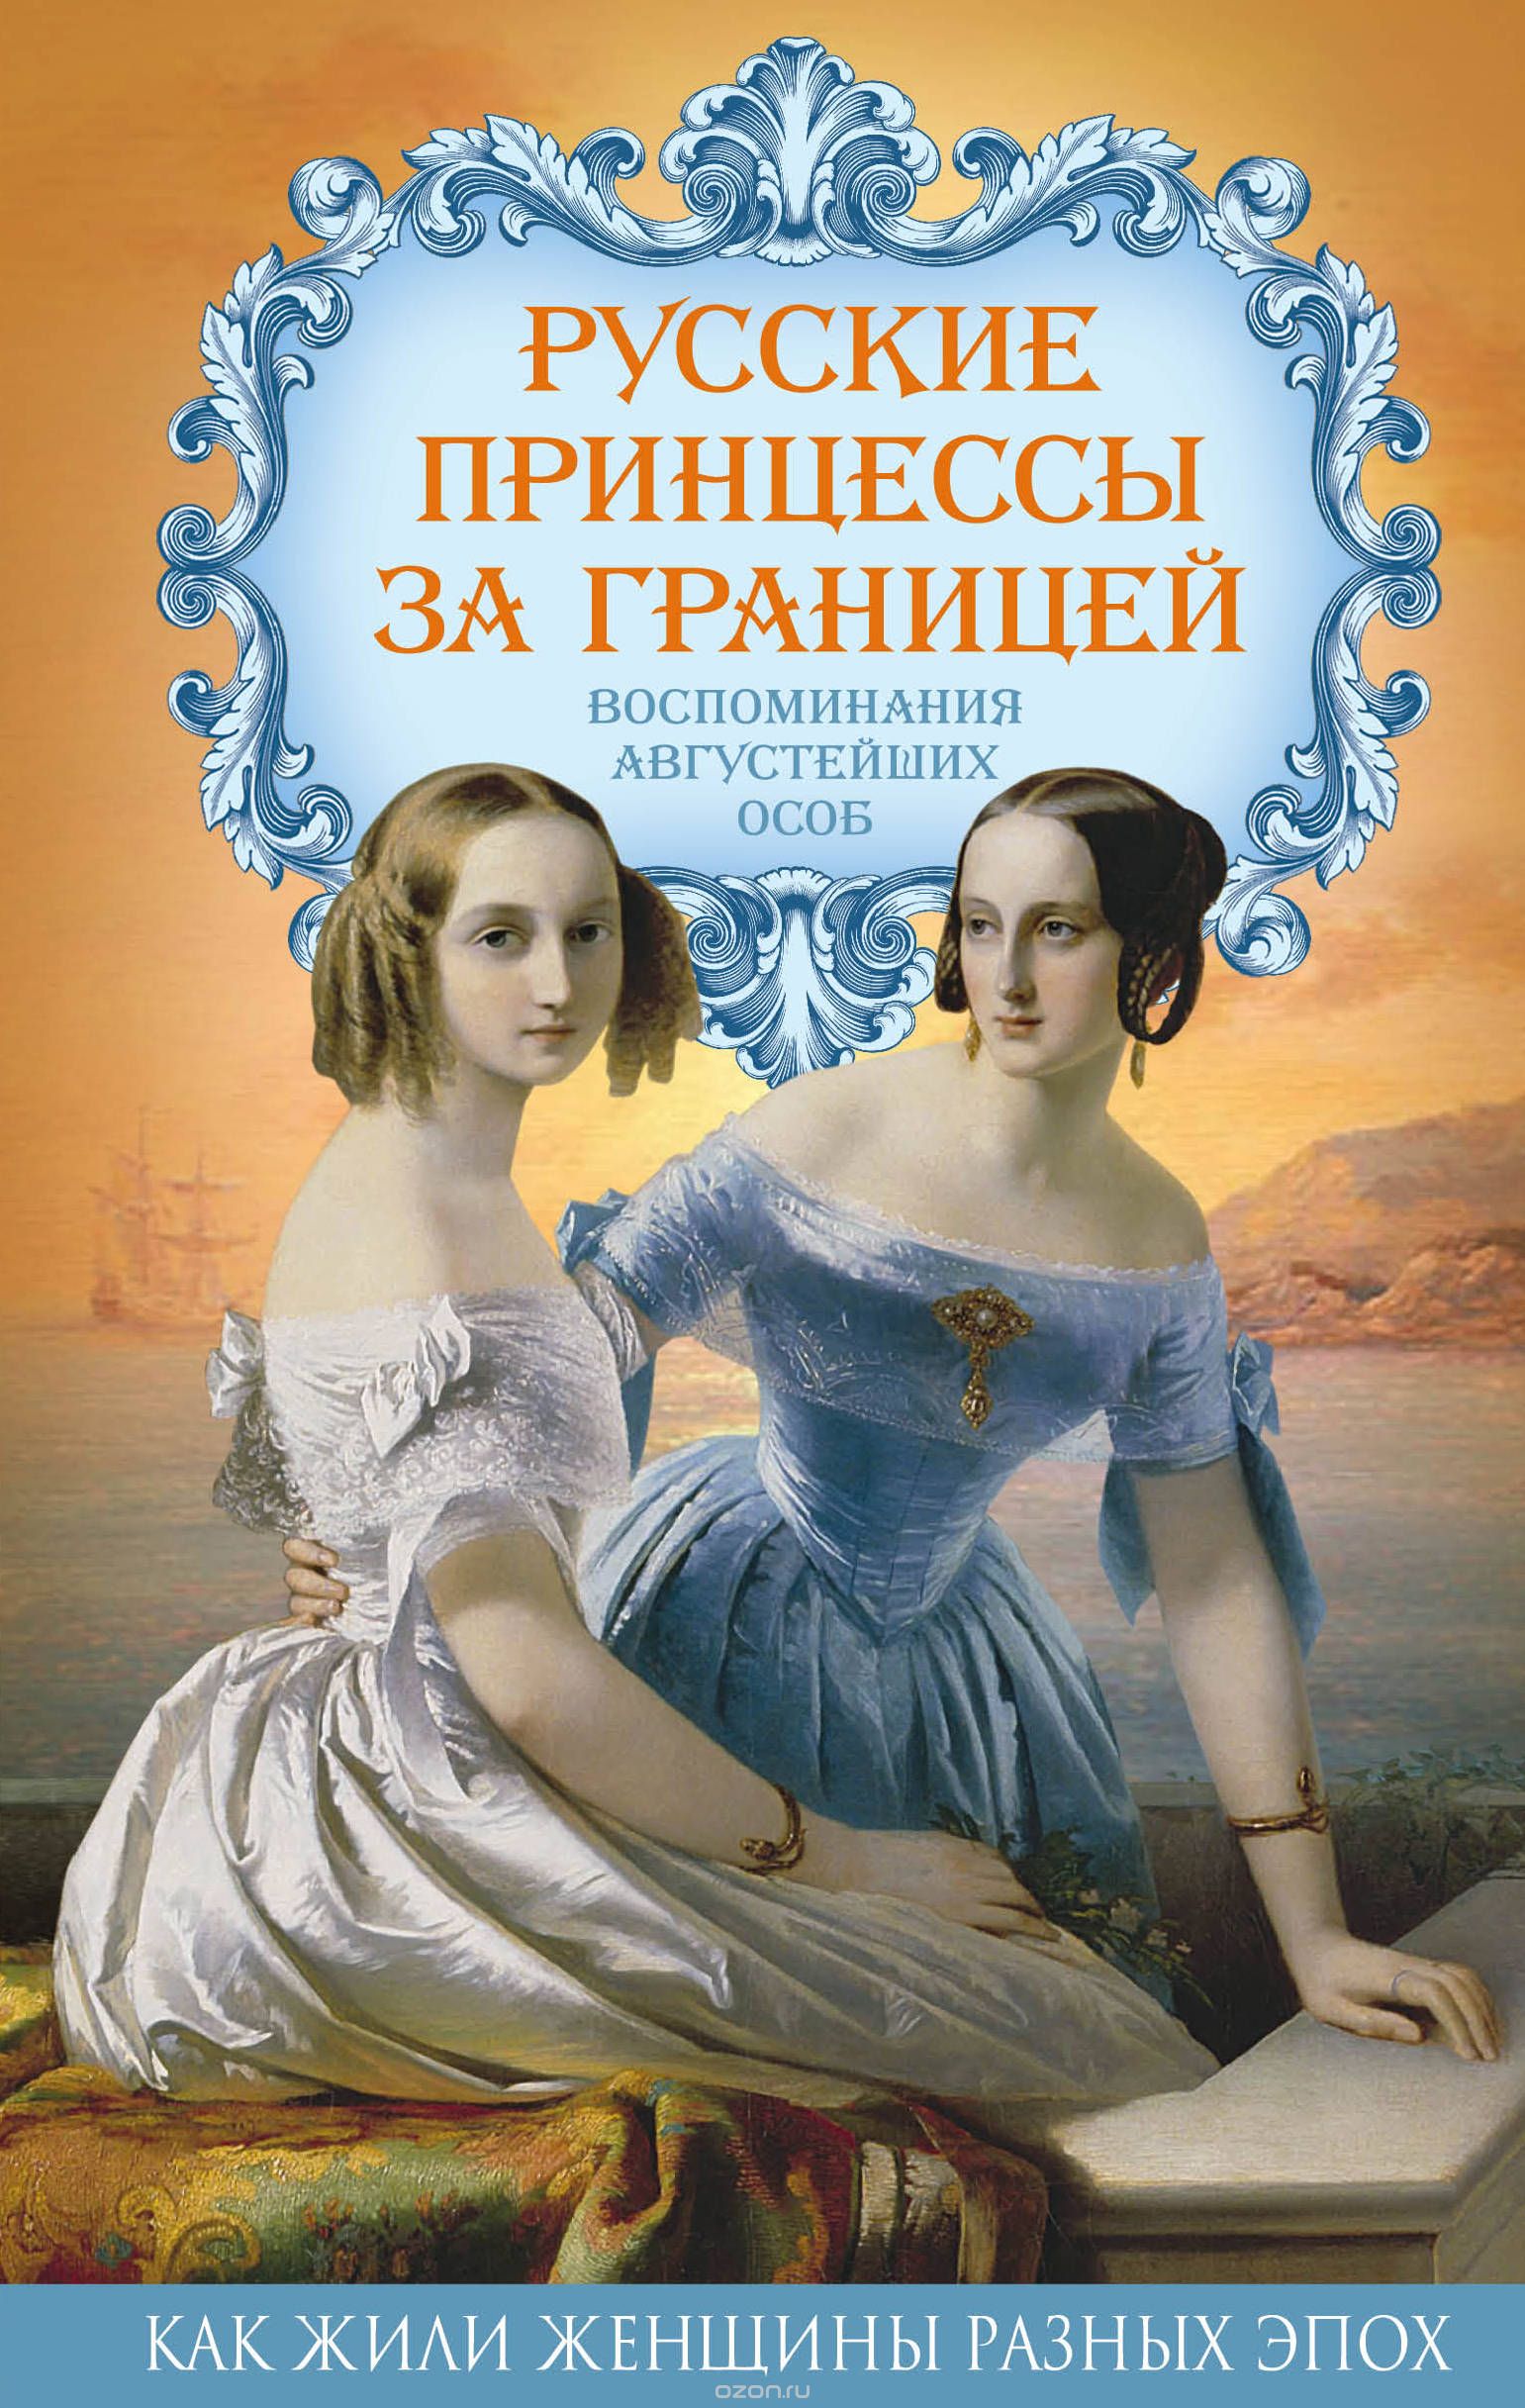 Скачать книгу "Русские принцессы за границей. Воспоминания августейших особ, Елена Первушина"